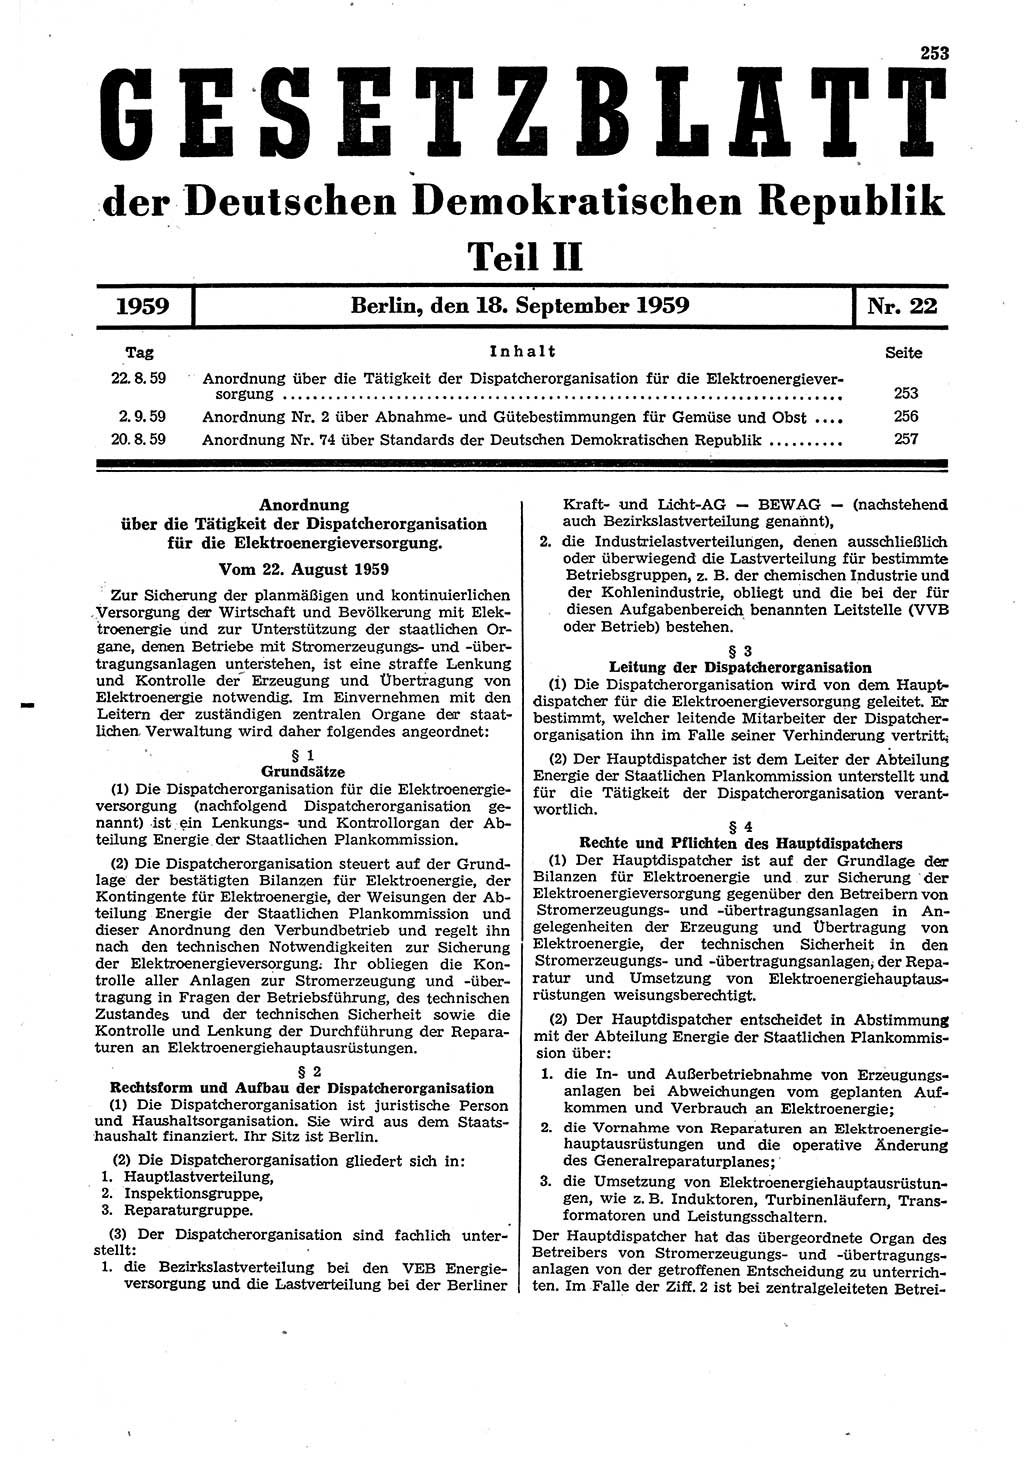 Gesetzblatt (GBl.) der Deutschen Demokratischen Republik (DDR) Teil ⅠⅠ 1959, Seite 253 (GBl. DDR ⅠⅠ 1959, S. 253)